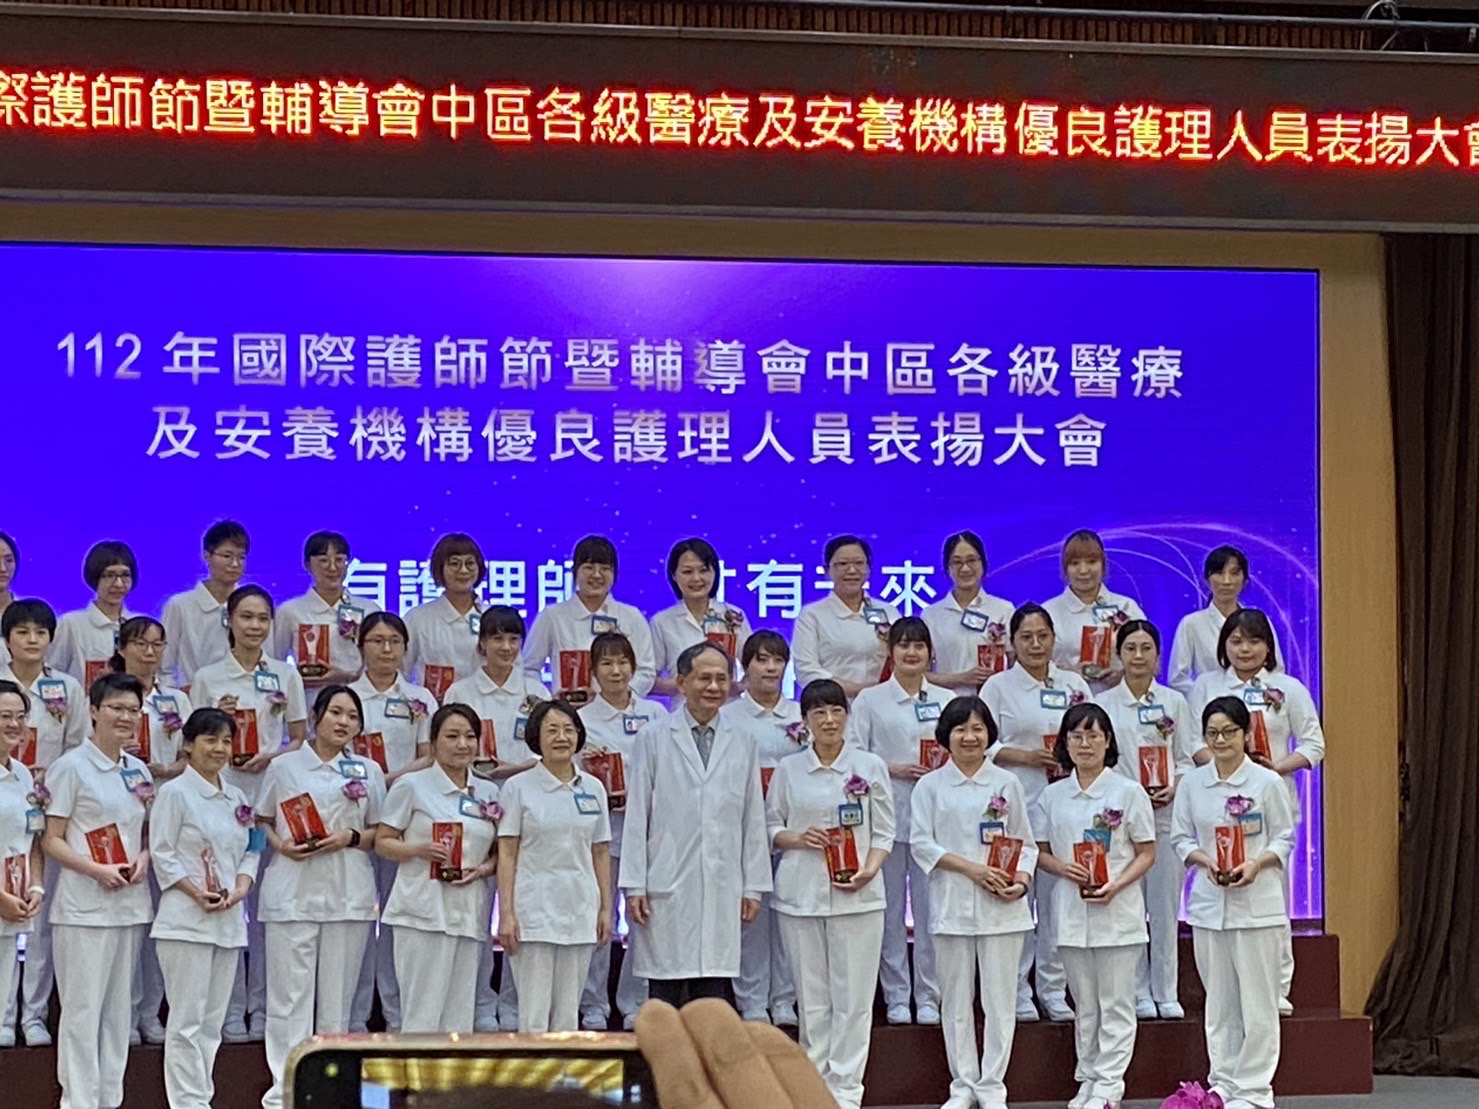 2023/05/04本組營養醫療組護理師林秀玉,獲選為112年台中榮總優良護理師